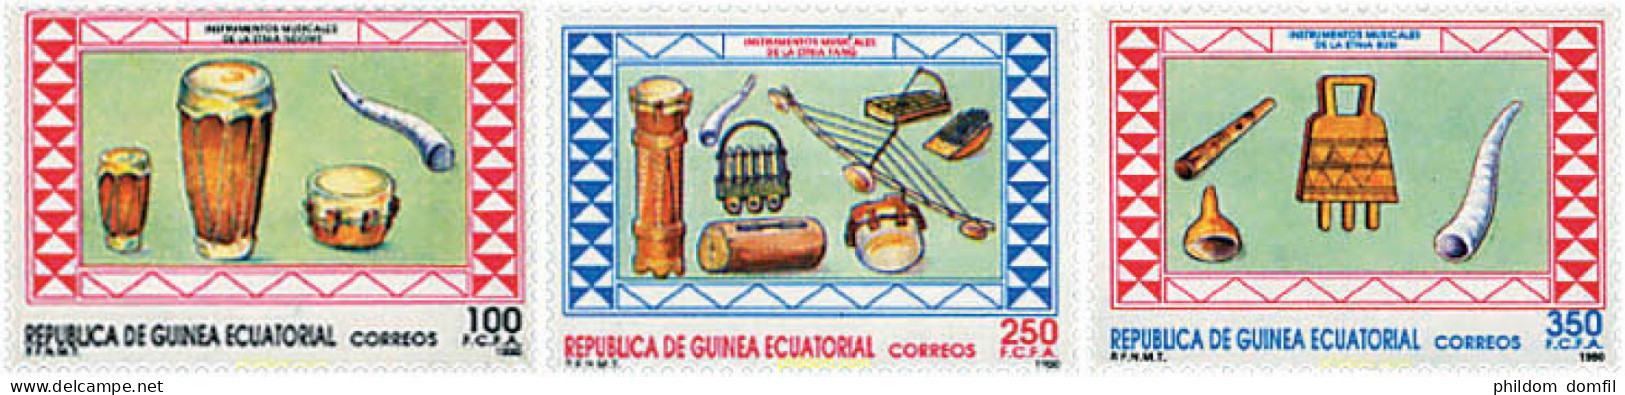 37619 MNH GUINEA ECUATORIAL 1990 INSTRUMENTOS DE MUSICA - Guinea Equatoriale